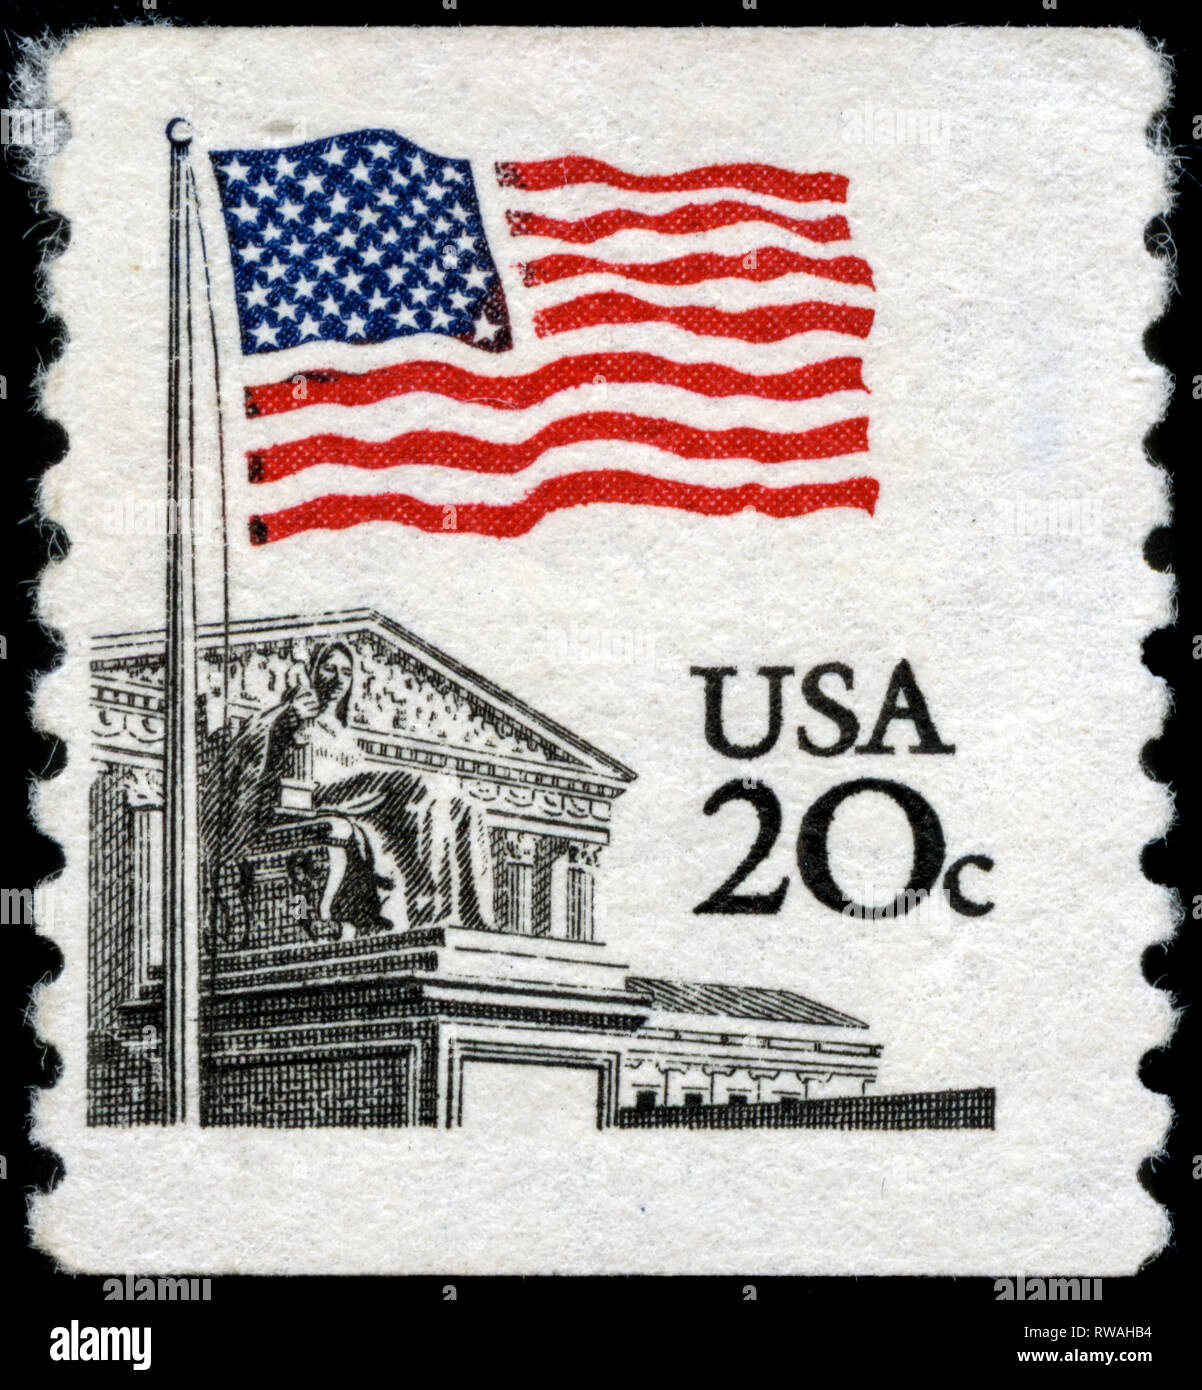 USPS U.S. Flag Forever Stamps, 20 Postage Stamps (FOREVER-FLAG20)